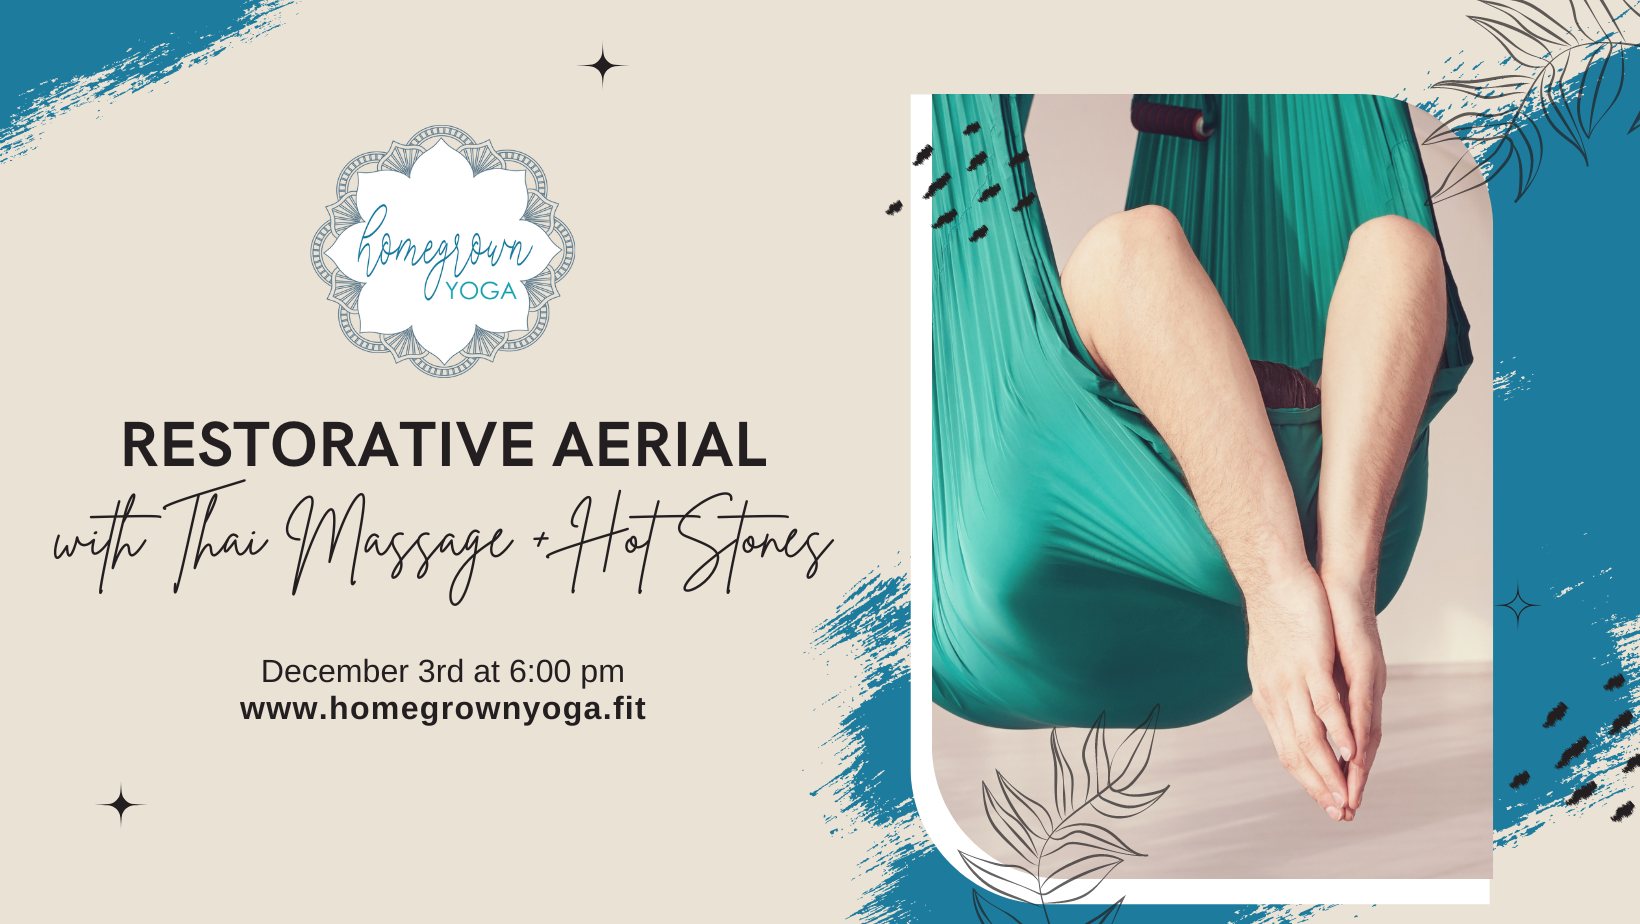 Restorative Aerial Yoga with Thai Massage + Hot Stones